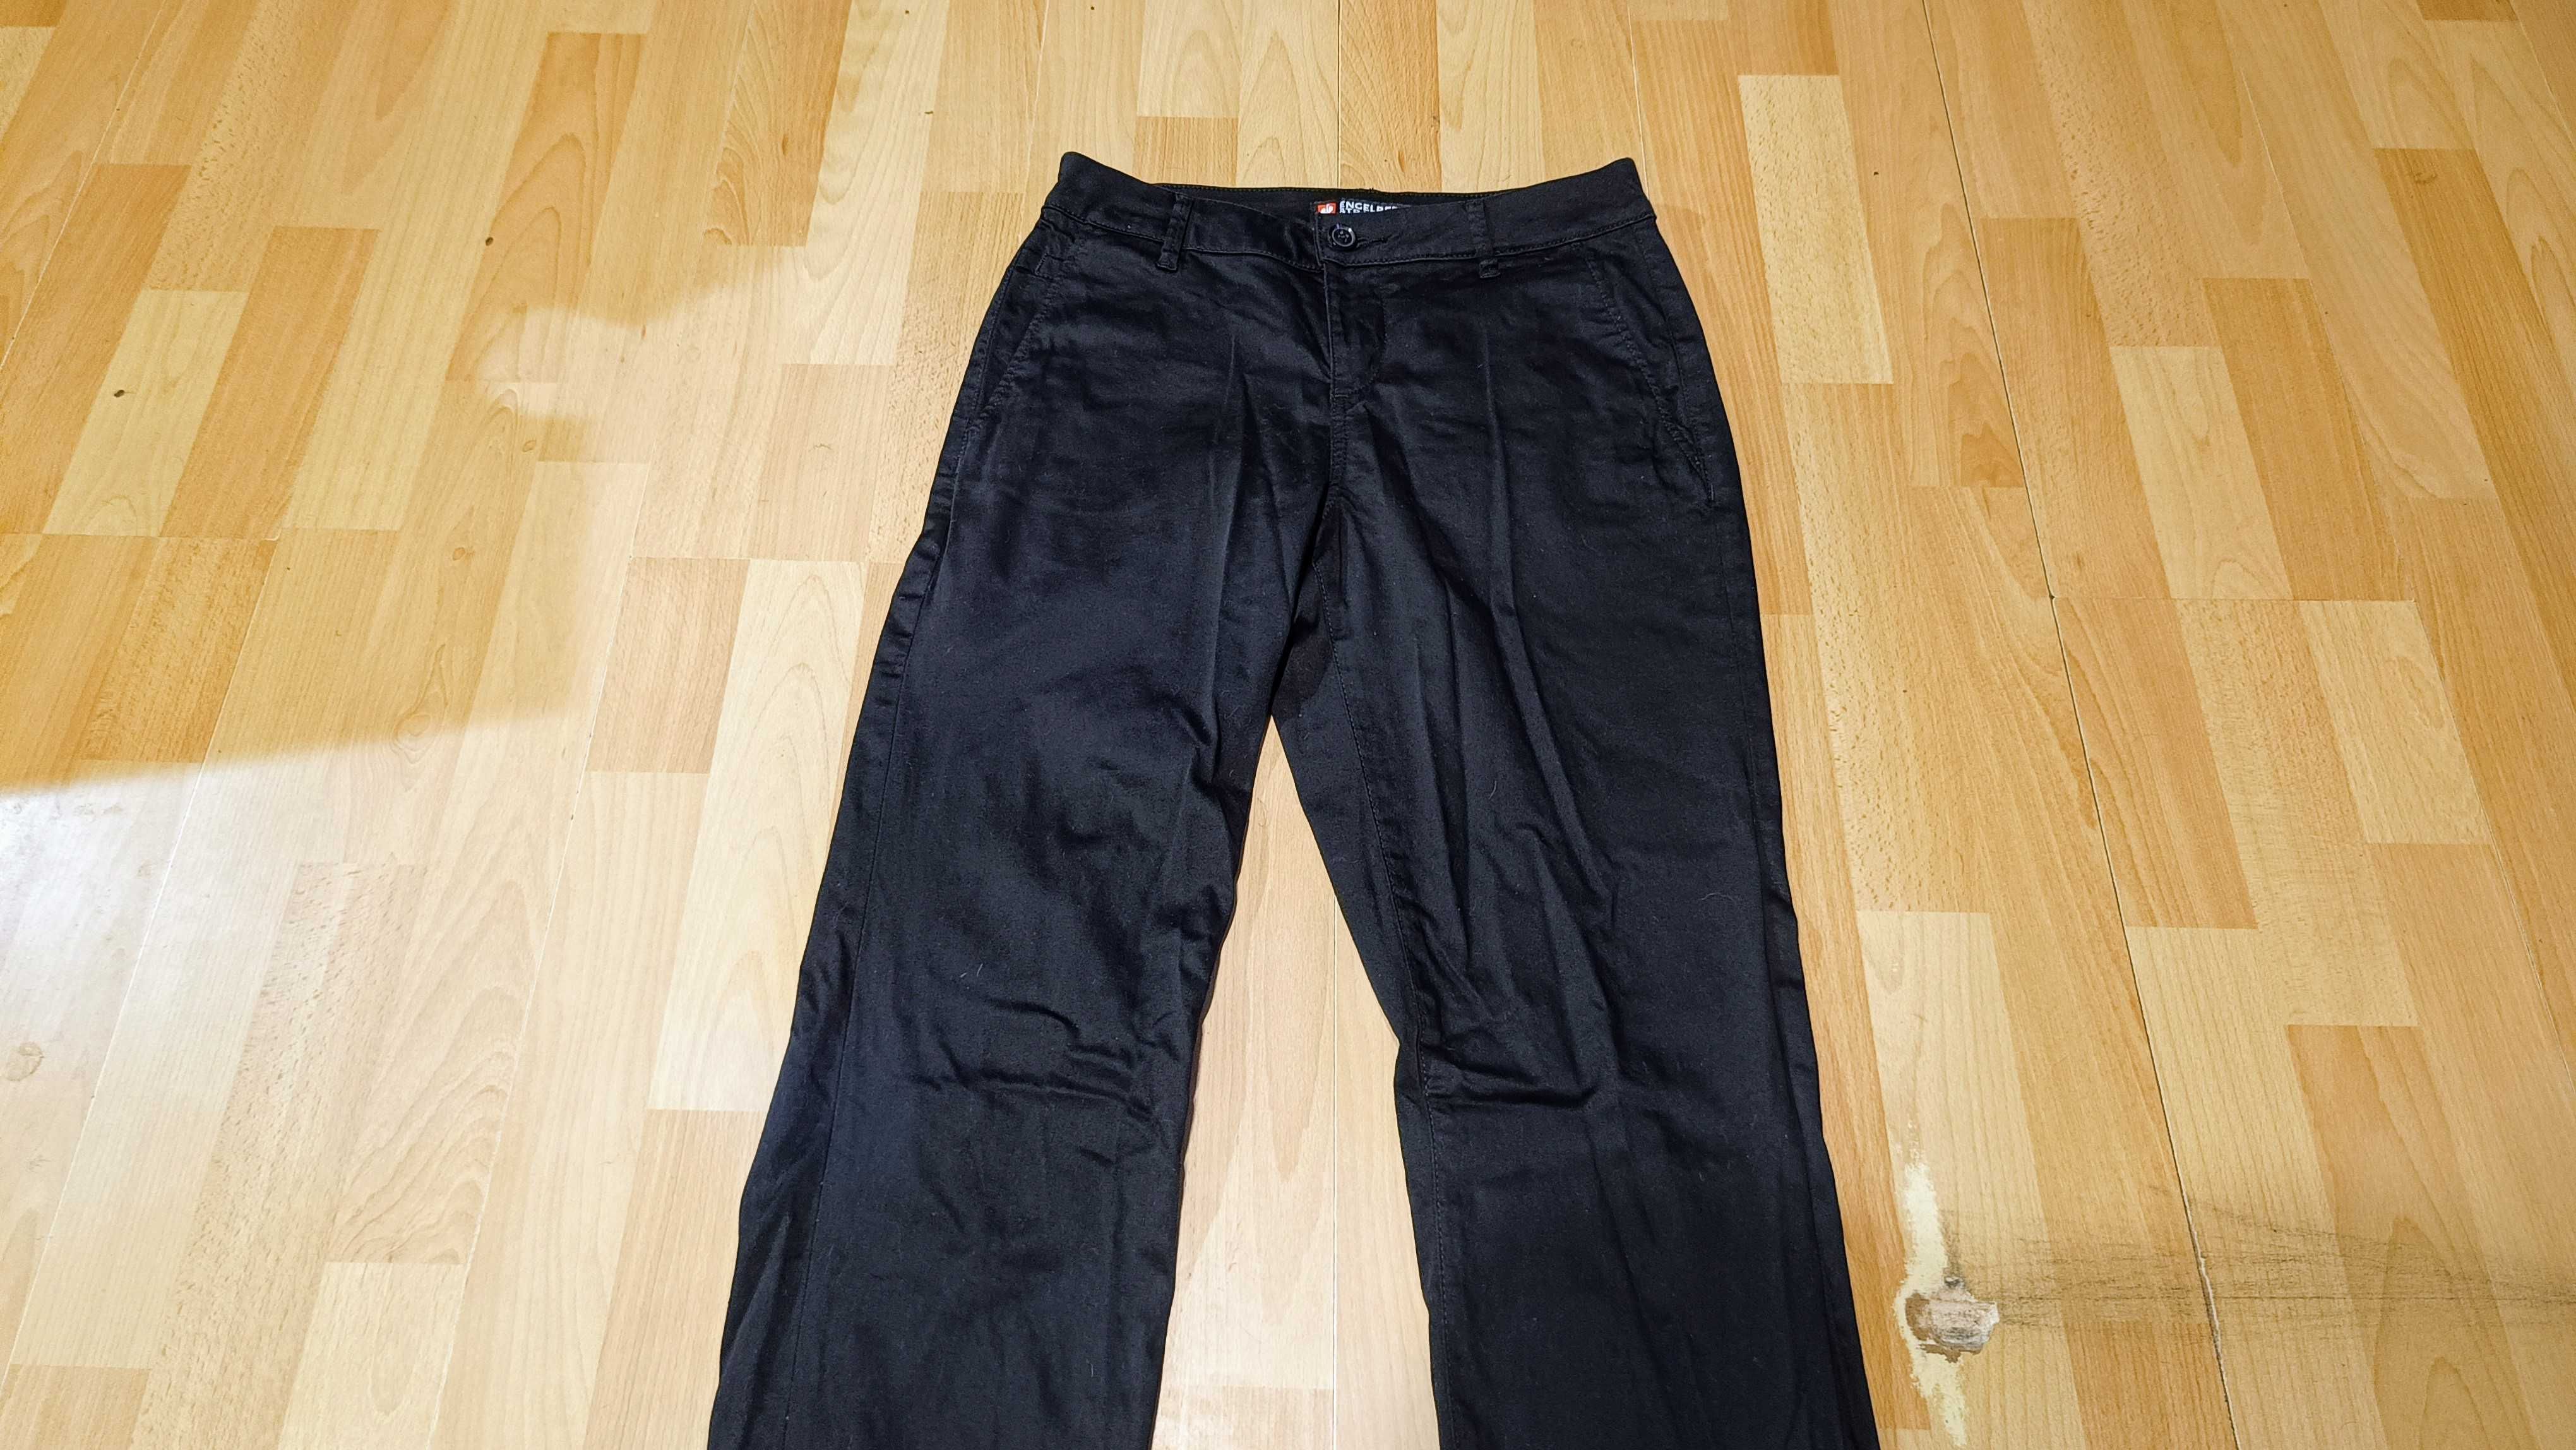 Damskie spodnie ENGELBERT STRAUSS typ CHINO r.S(36L) nowe stan idealny